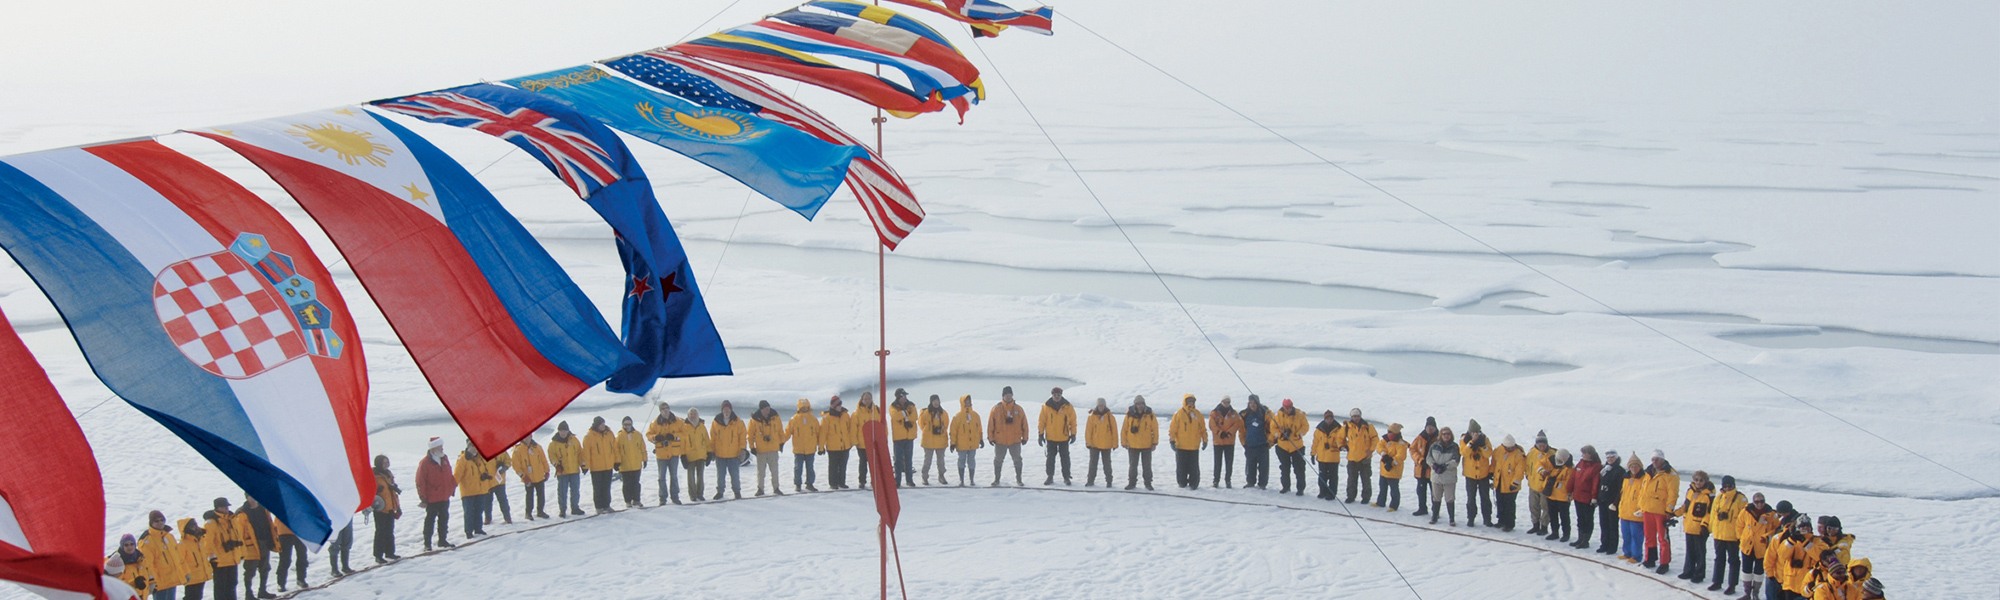 Ski de fond et ski nordique Pôle Nord Géographique © Andrew_Main_Wilson / Quark Expeditions